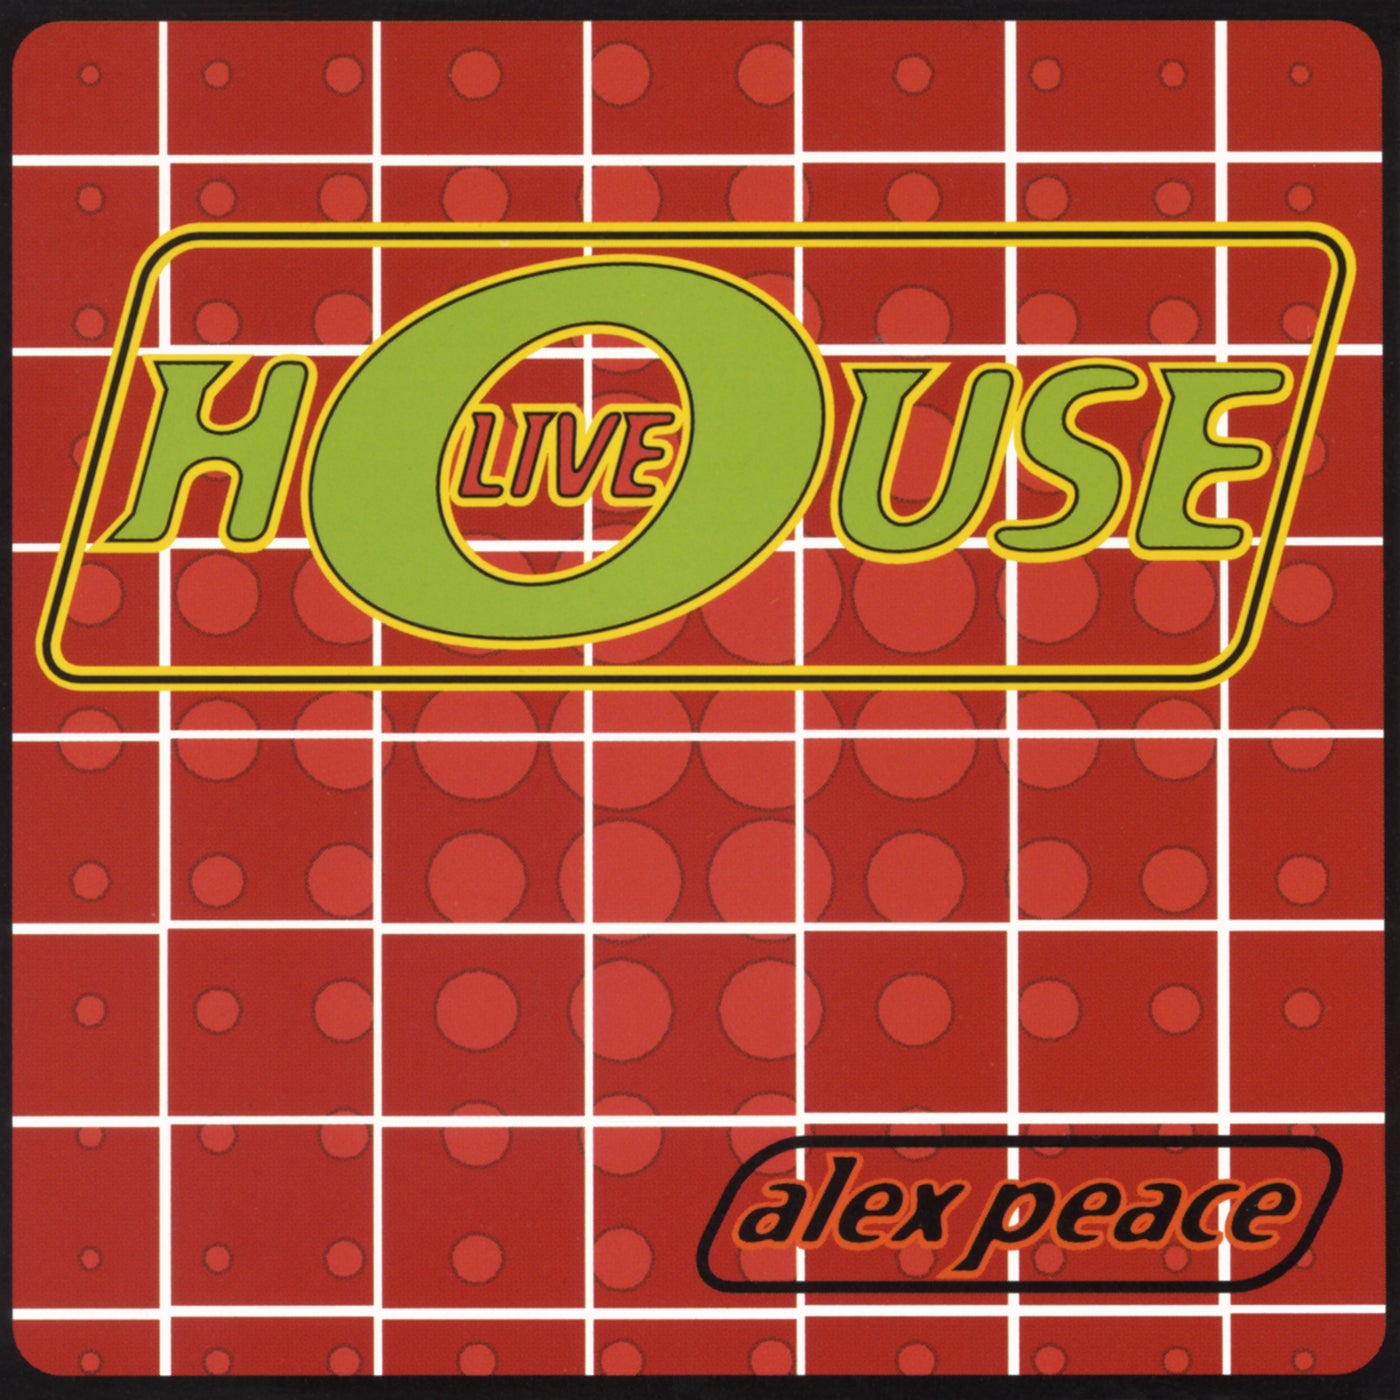 Alex Peace Presents: House Live